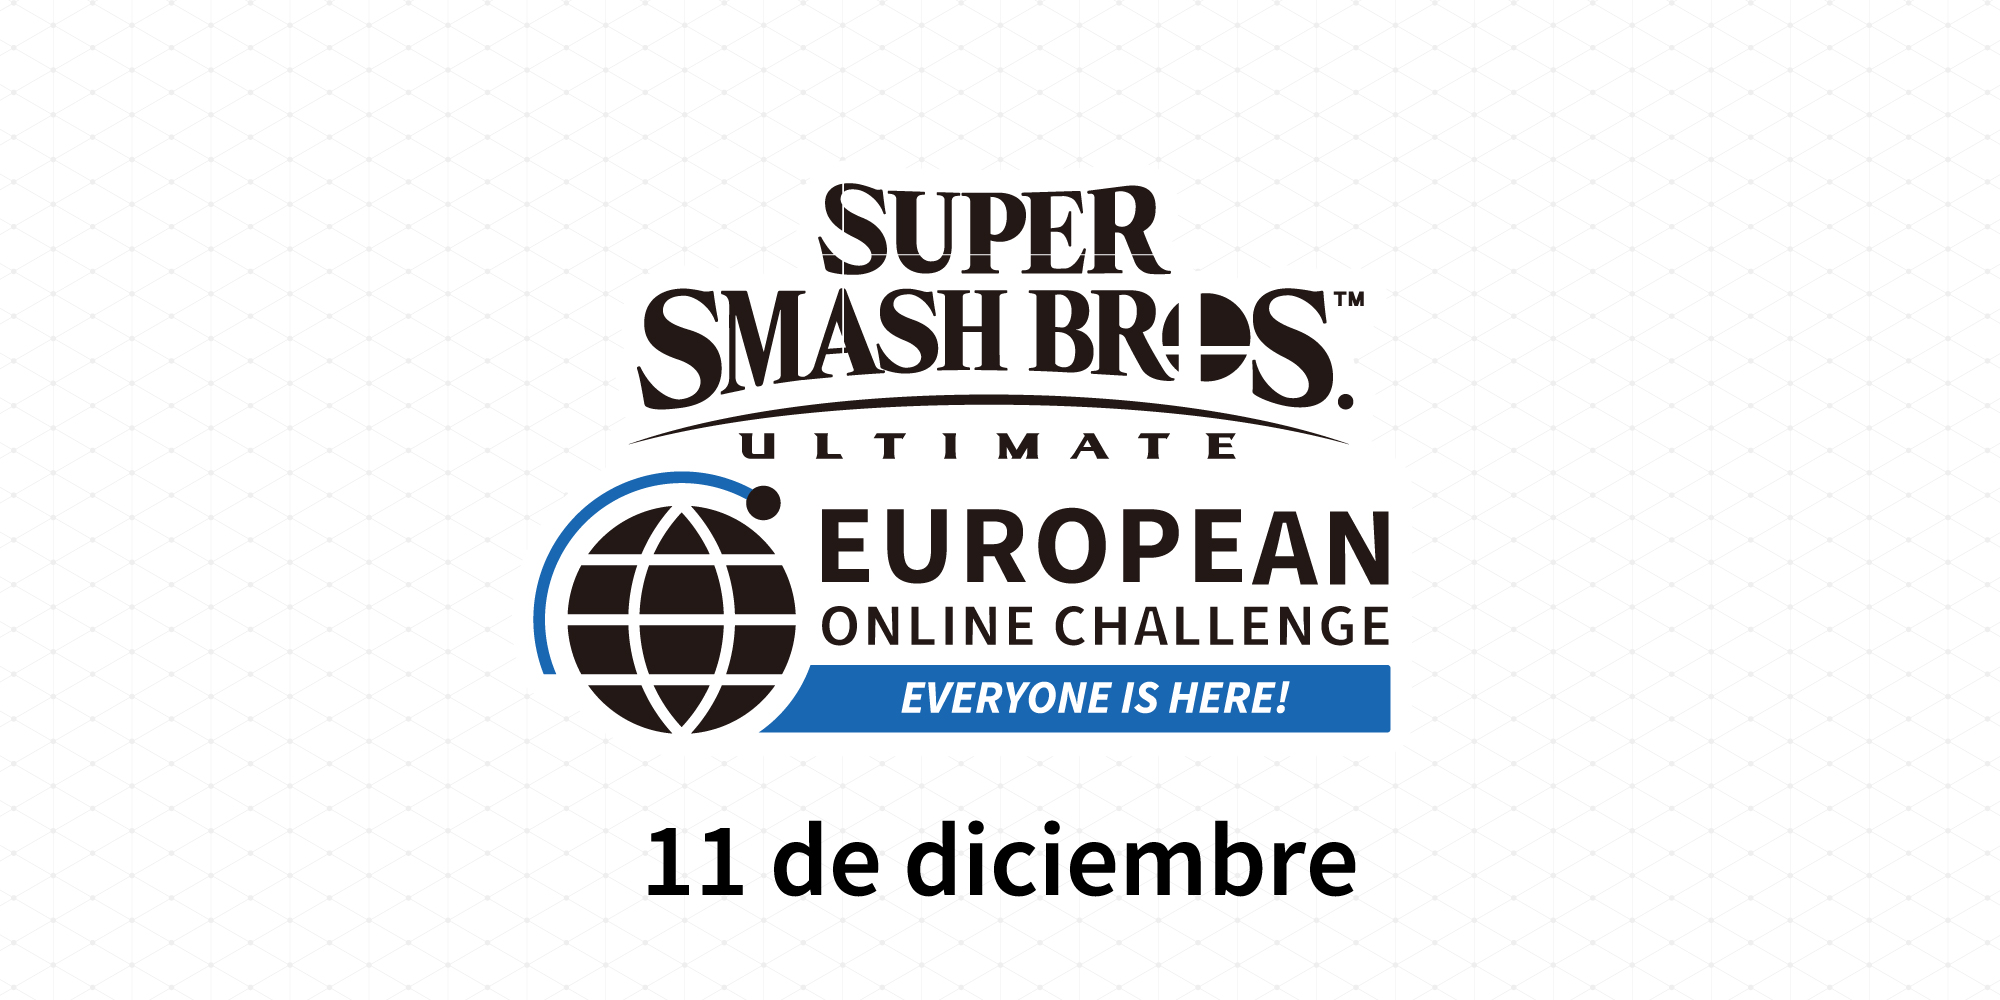 ¡Ya tenemos los resultados del Super Smash Bros. Ultimate European Online Challenge!